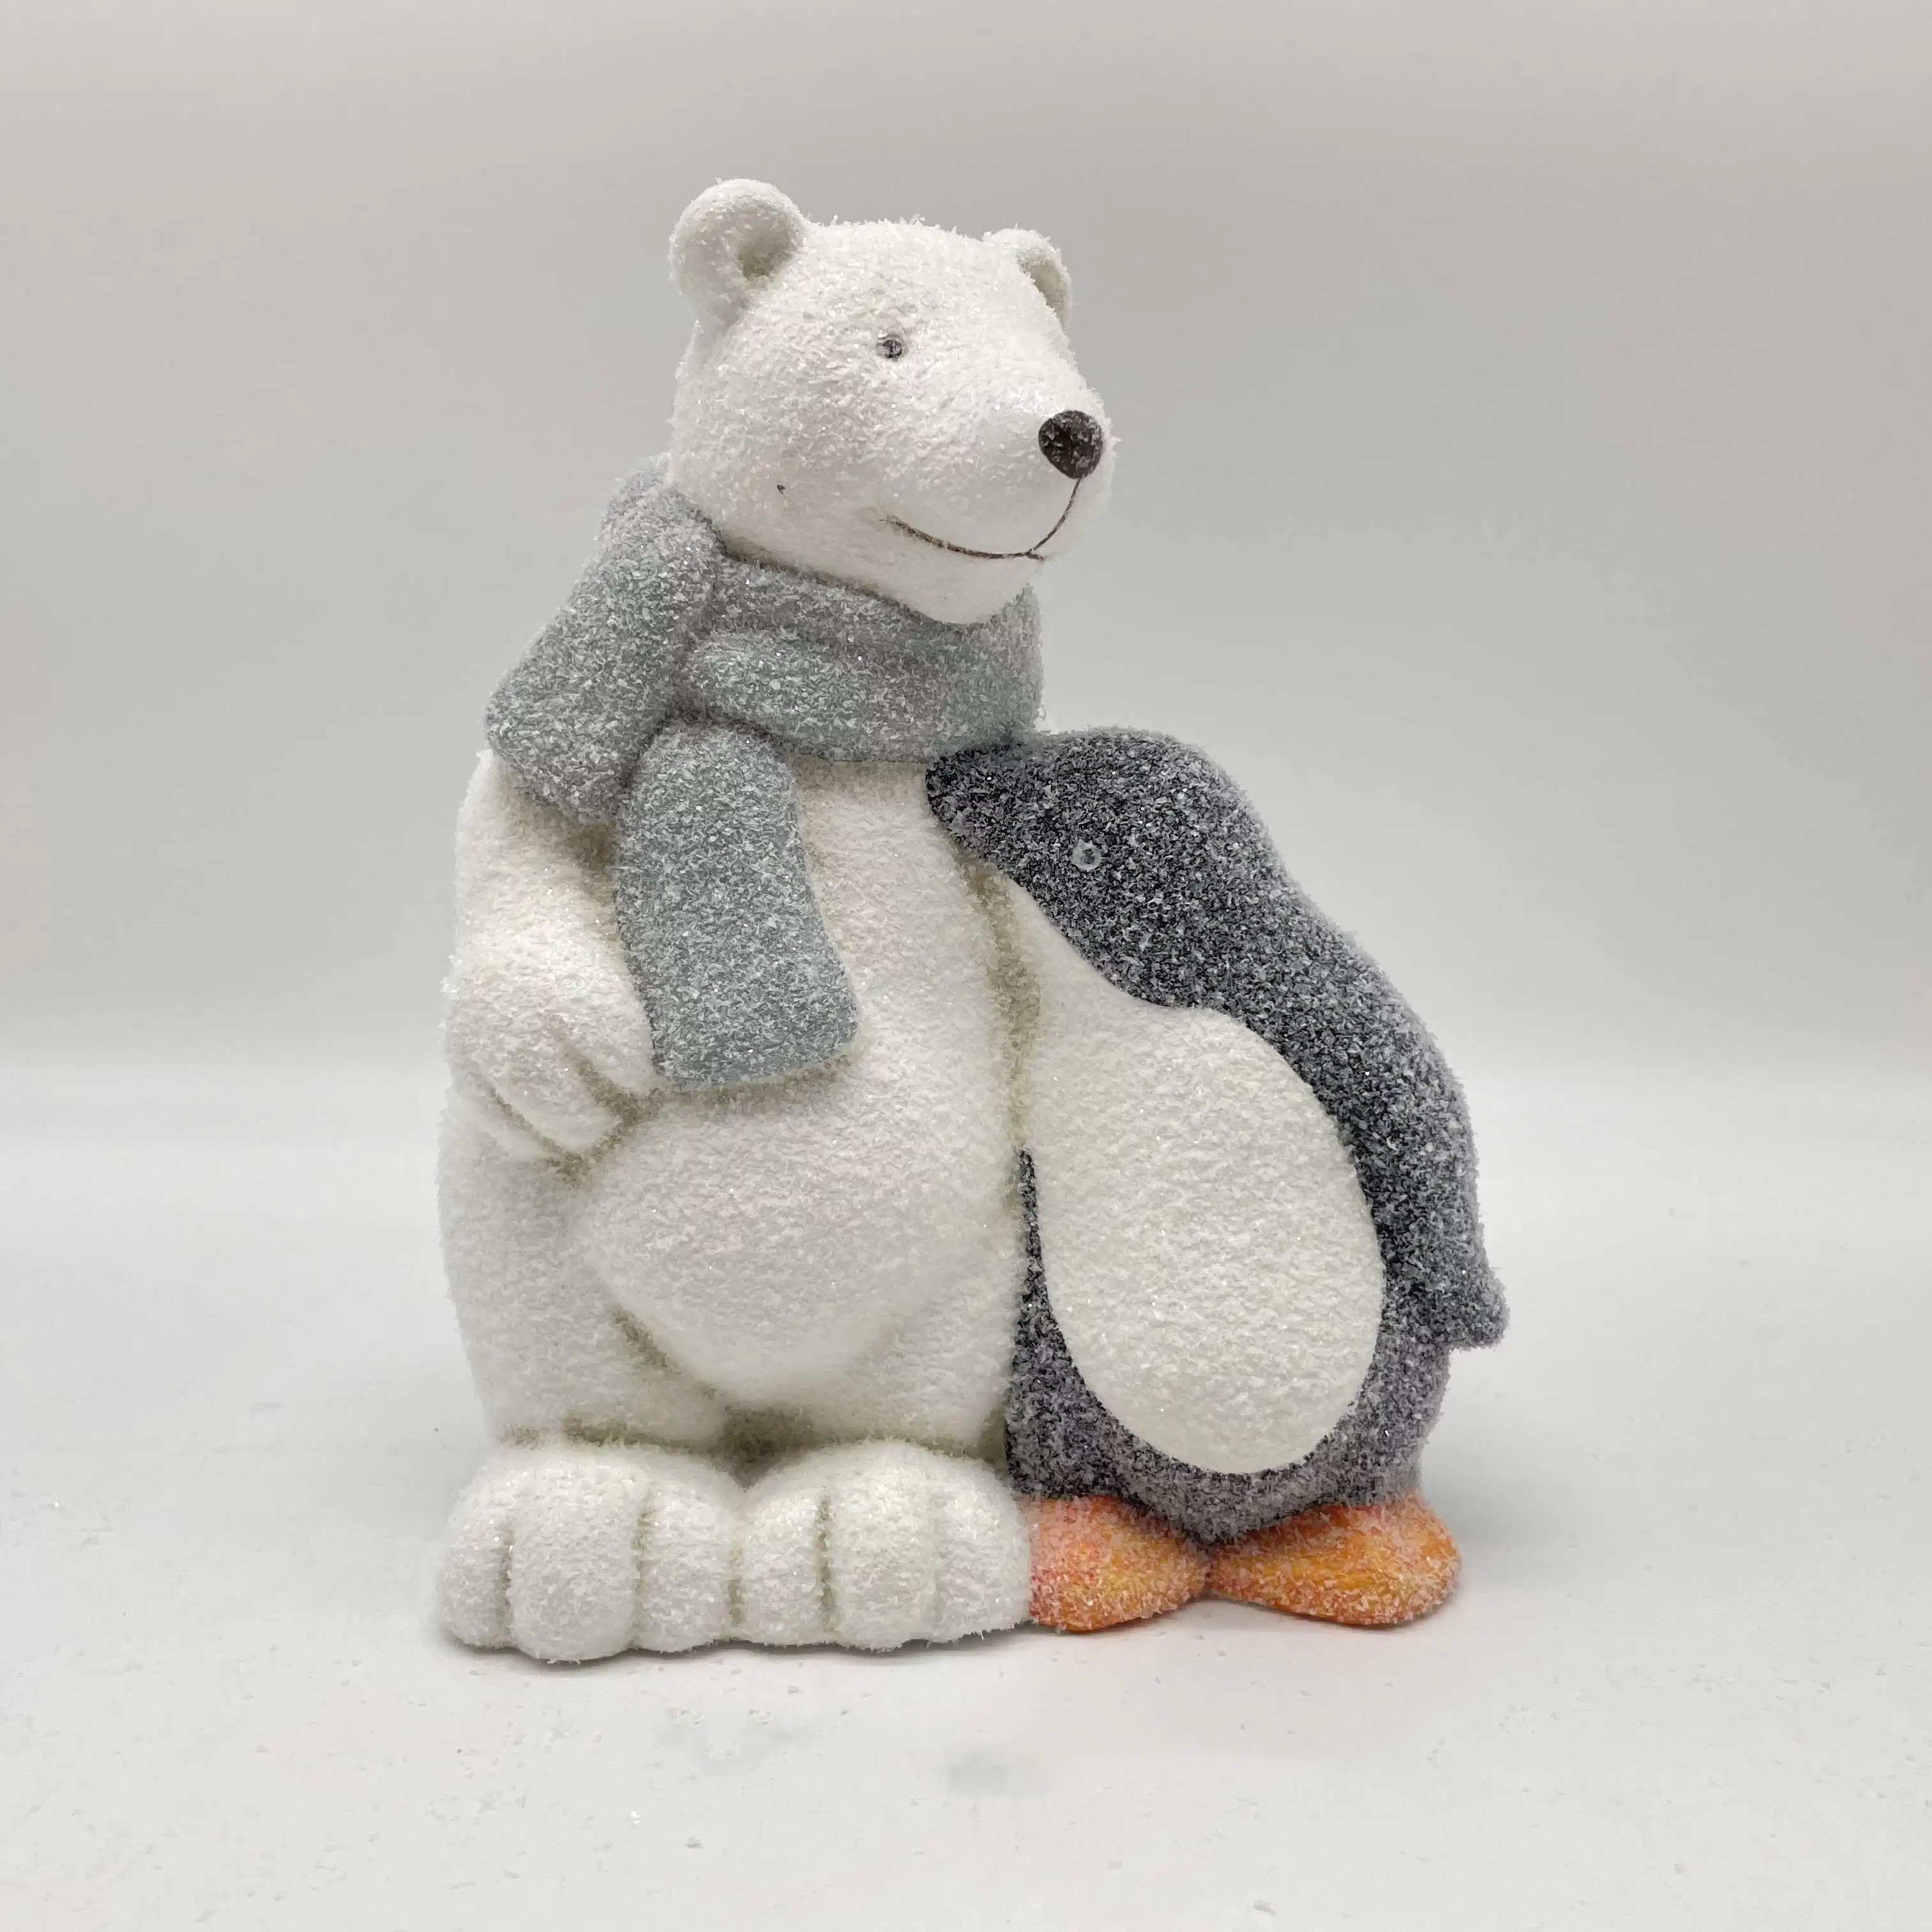 زخارف الدب القطبي الخزفية المخصصة لحرف حيوانات الكريسماس والتين